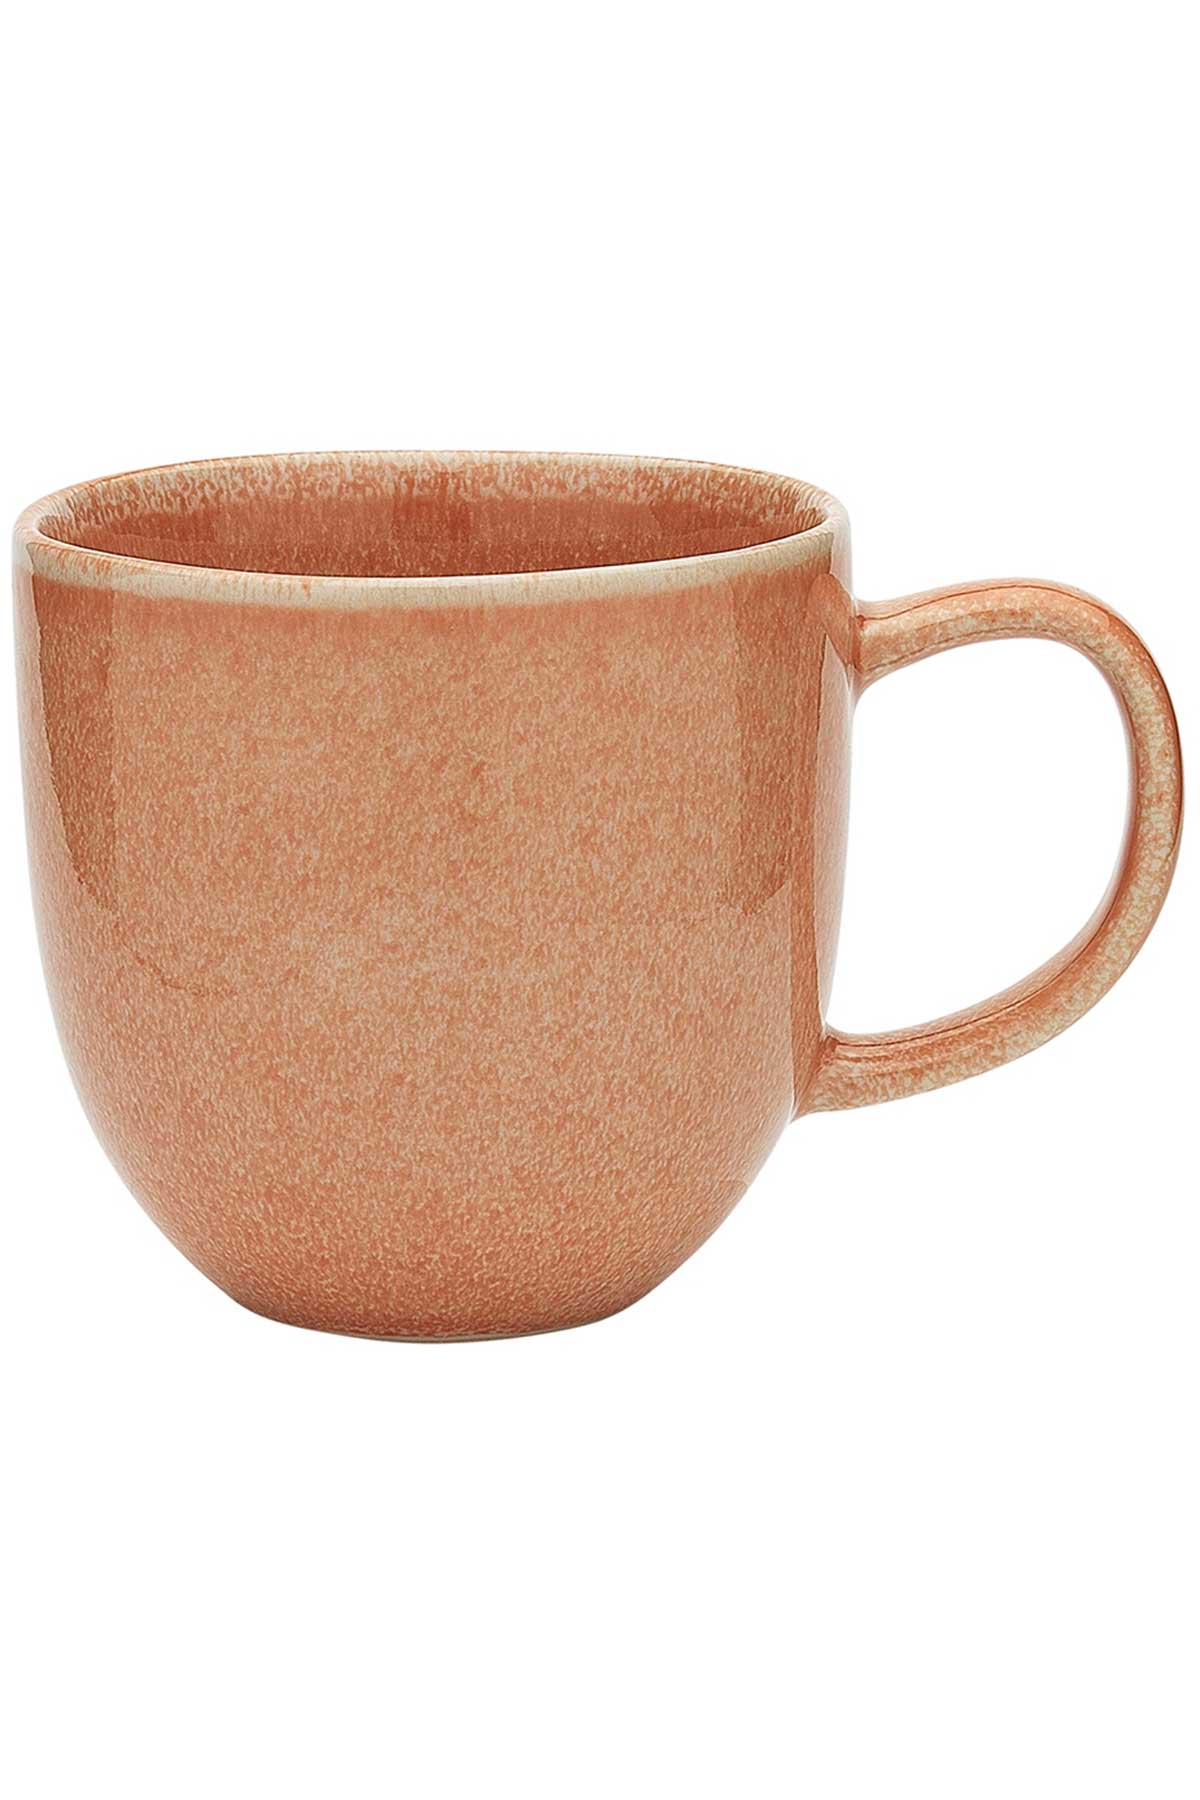 Dwell mug in Dusk